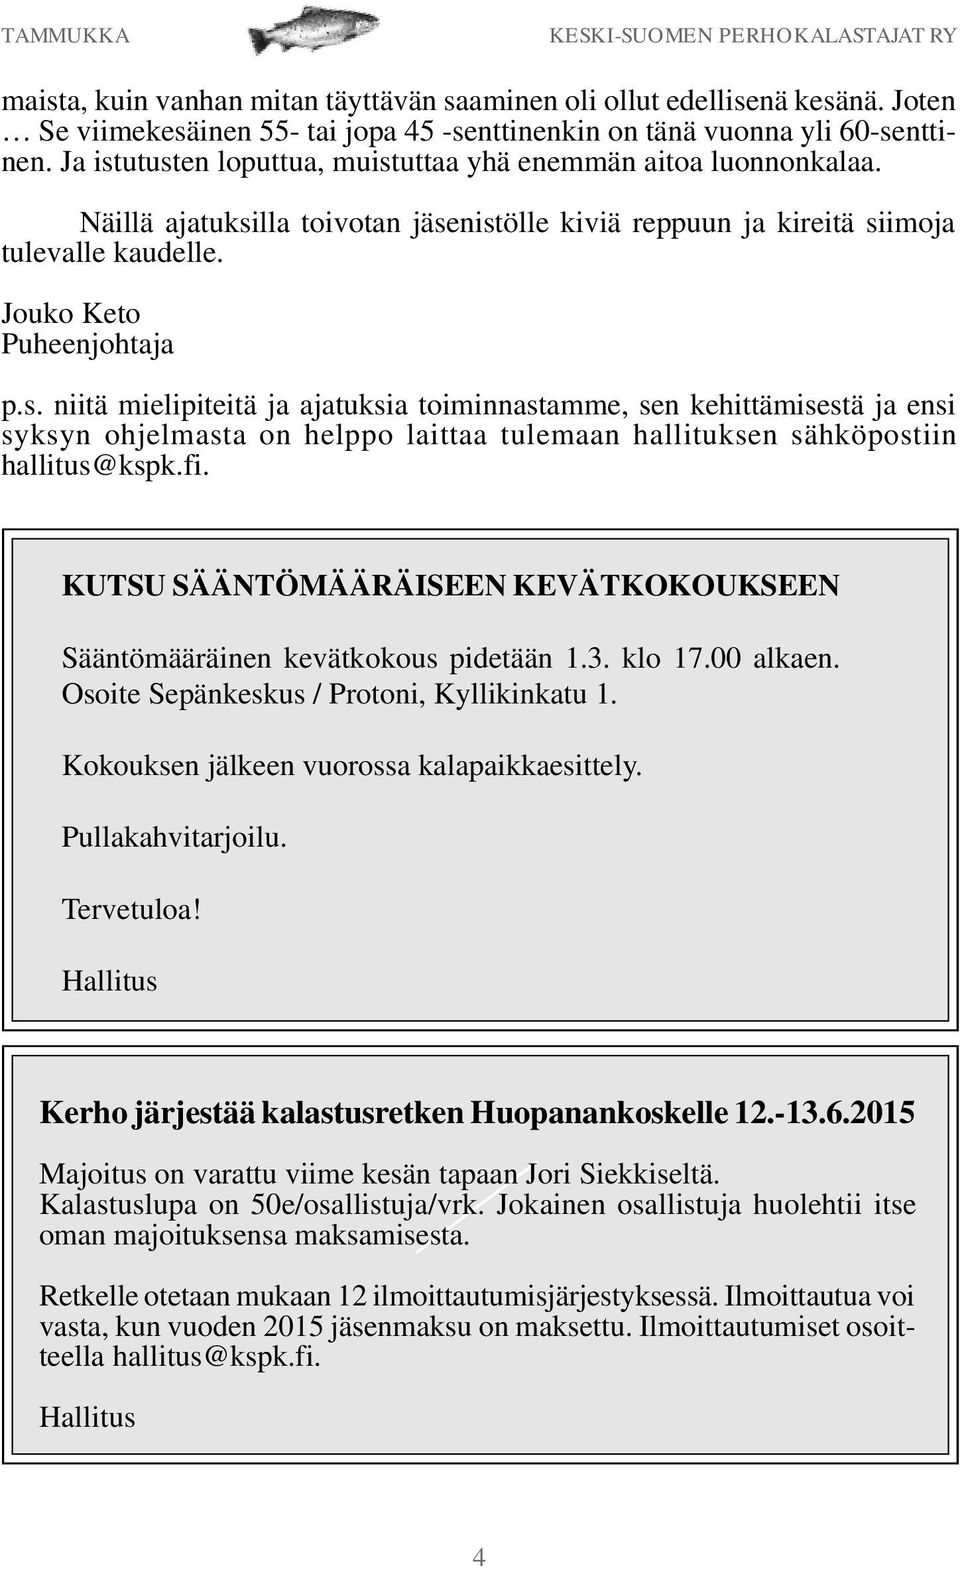 fi. KUTSU SÄÄNTÖMÄÄRÄISEEN KEVÄTKOKOUKSEEN Sääntömääräinen kevätkokous pidetään 1.3. klo 17.00 alkaen. Osoite Sepänkeskus / Protoni, Kyllikinkatu 1. Kokouksen jälkeen vuorossa kalapaikkaesittely.